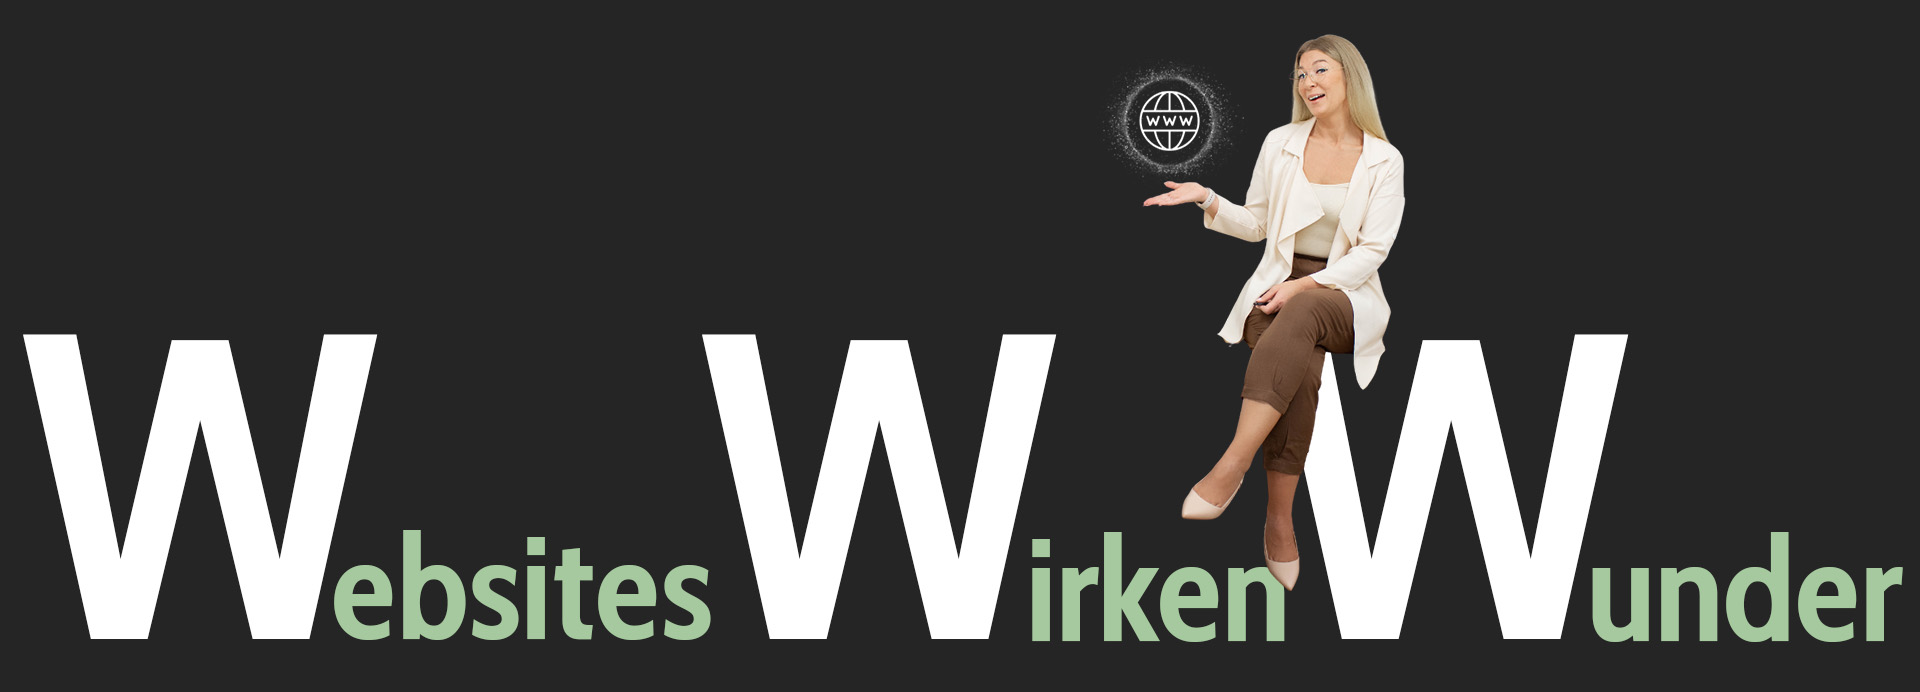 Websites wirken Wunder Banner mit Webdesignerin Yvette Alemdar auf dem Buchstaben sitzend